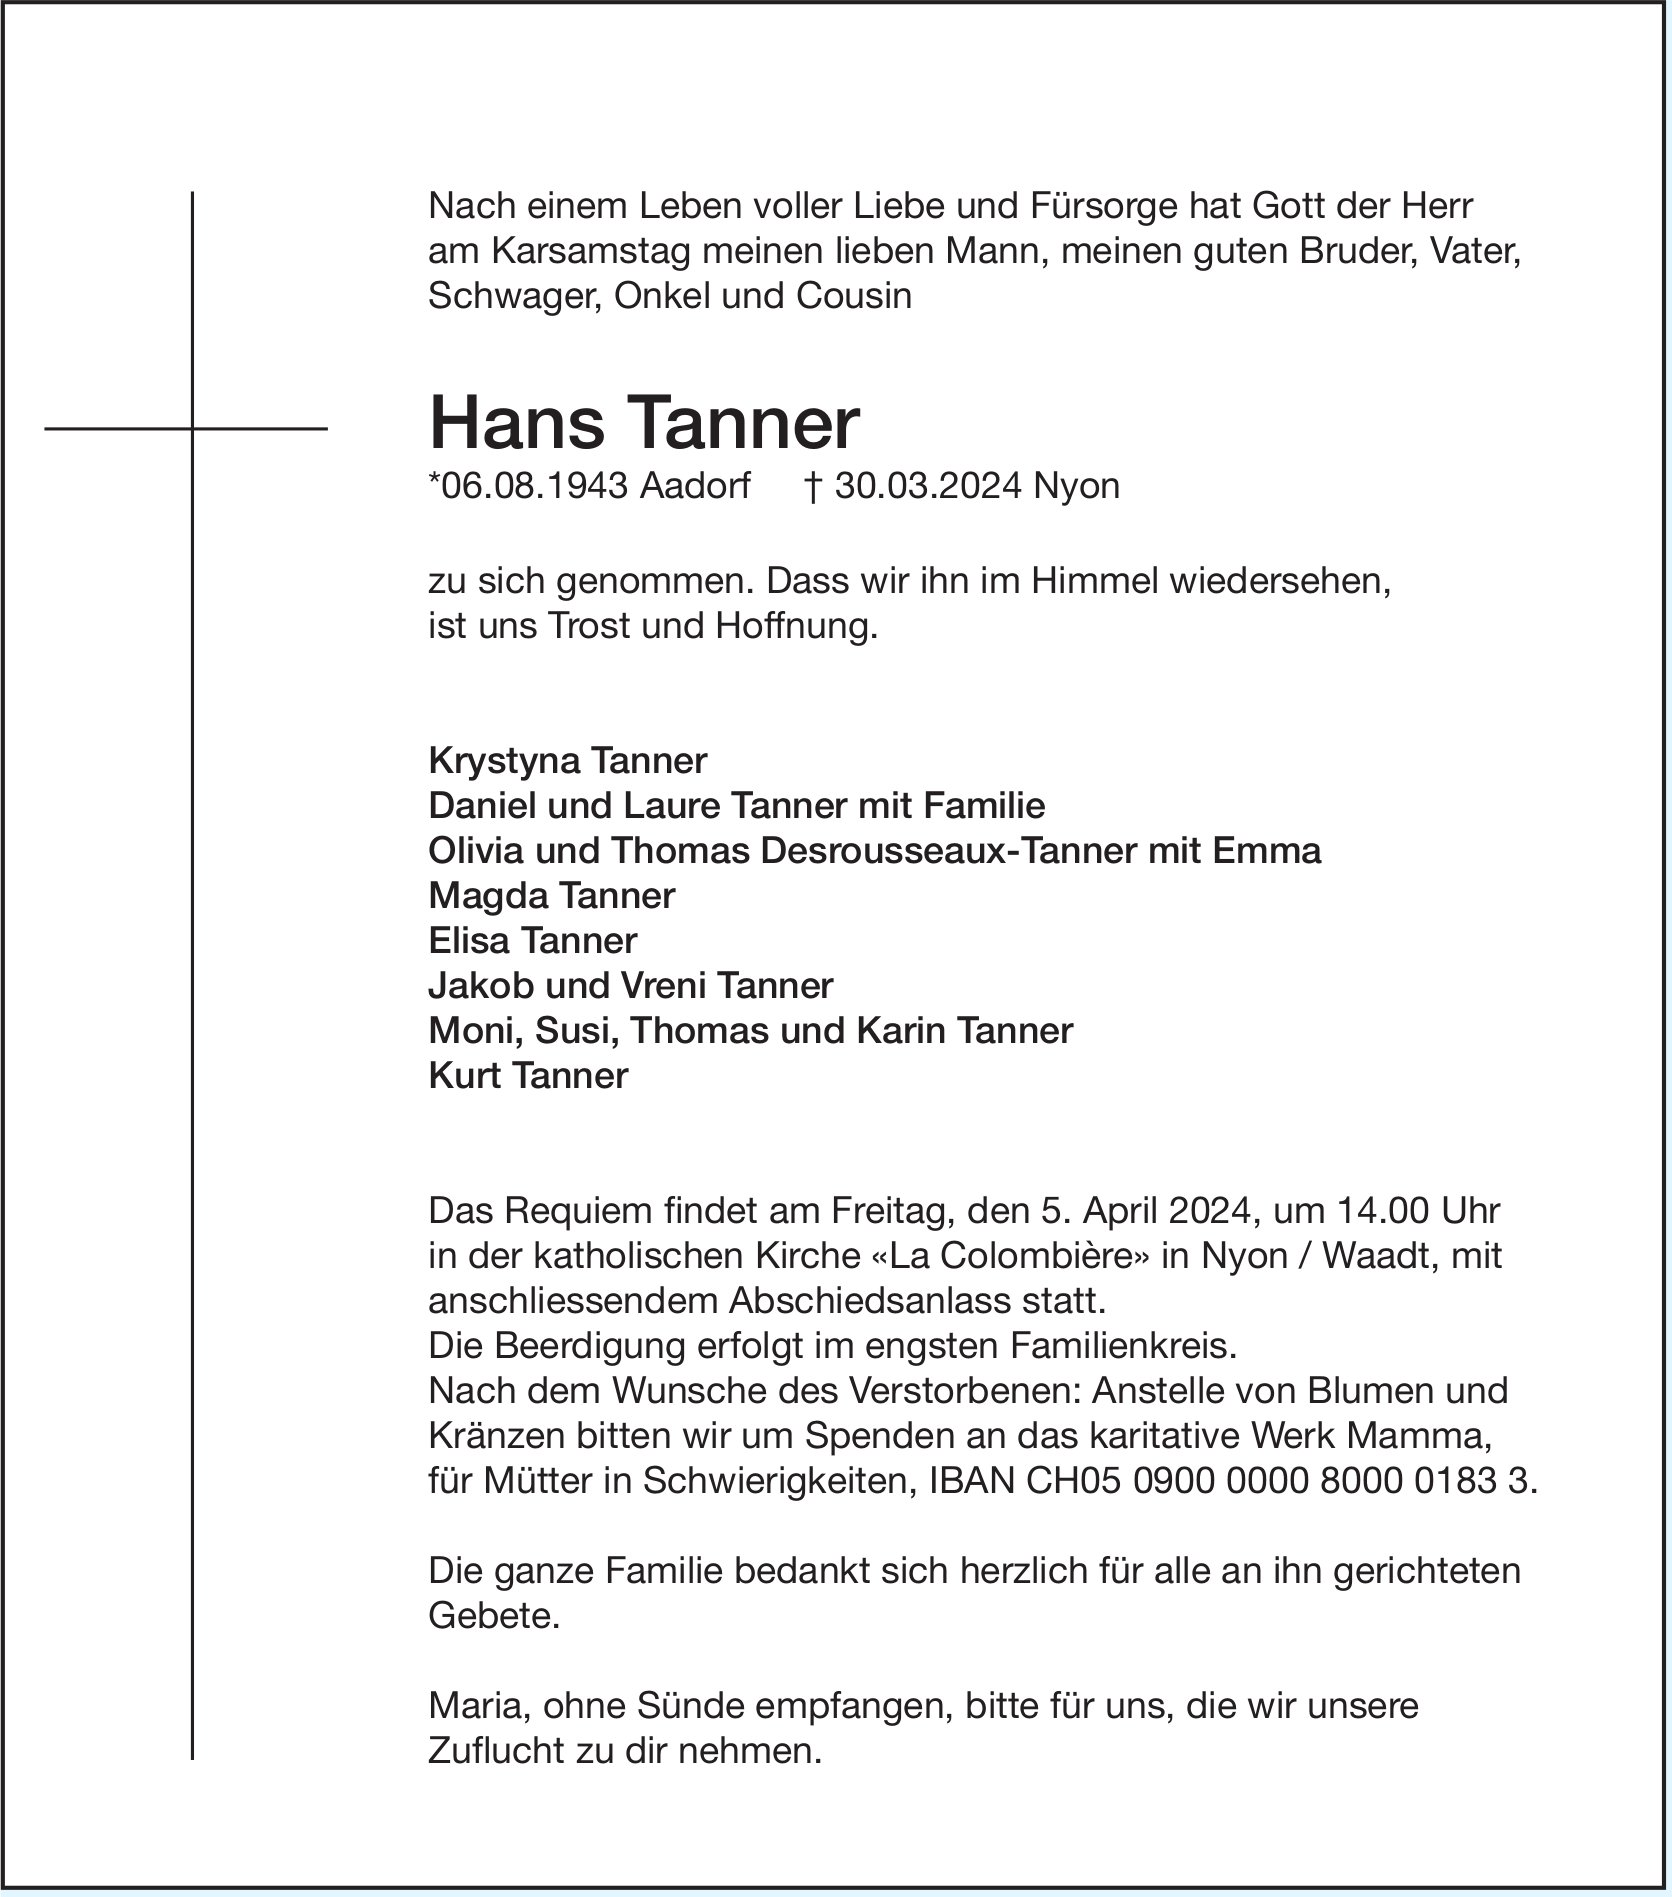 Tanner Hans, März 2024 / TA